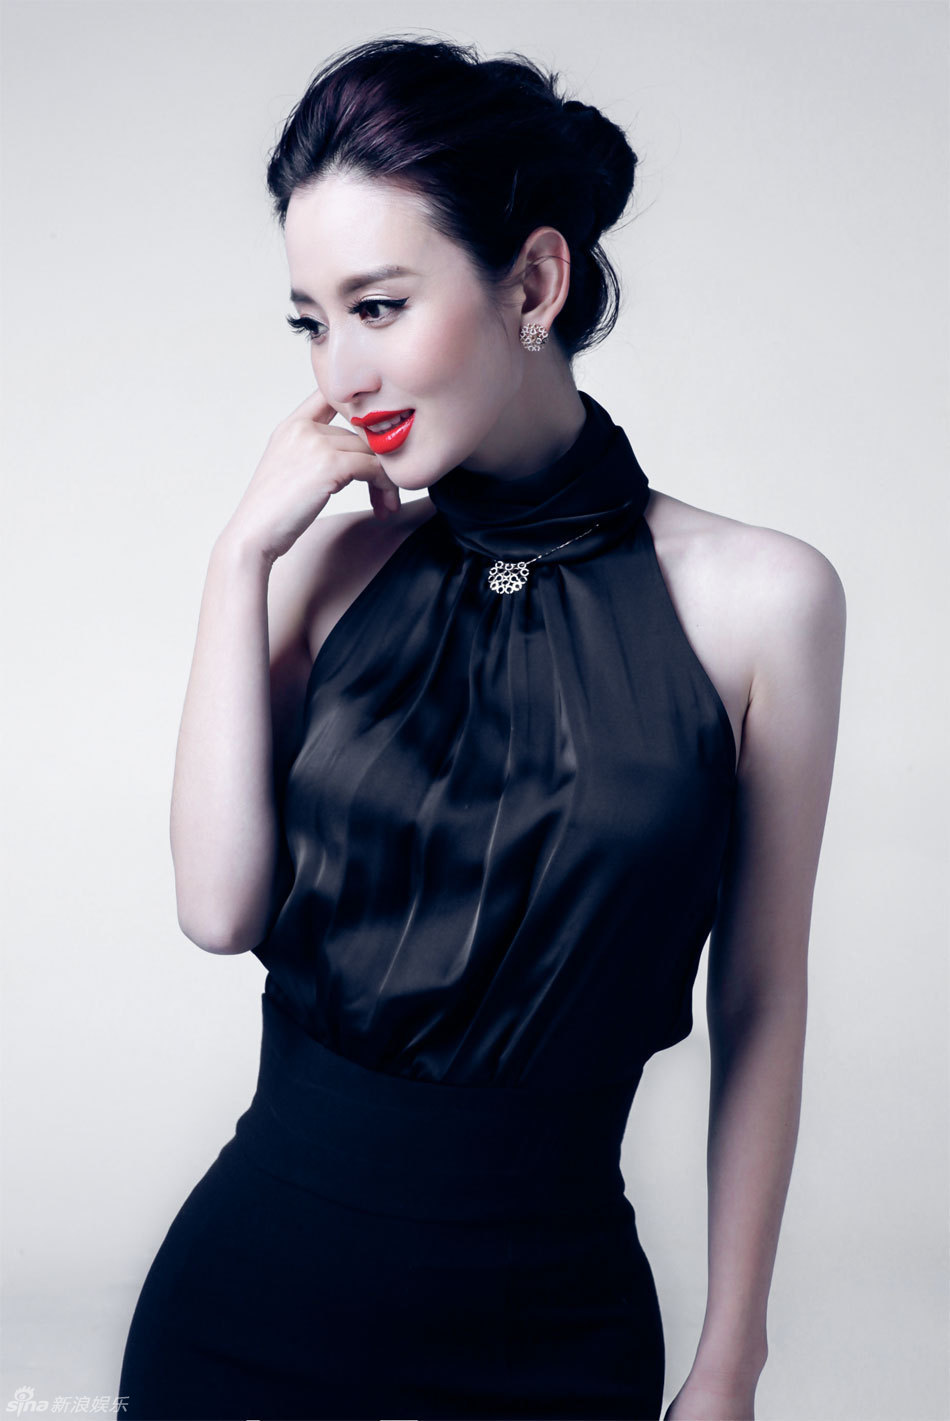 新浪娱乐讯 近日张萌为某杂志拍摄了一组时尚大片,经典红,黑色系礼服